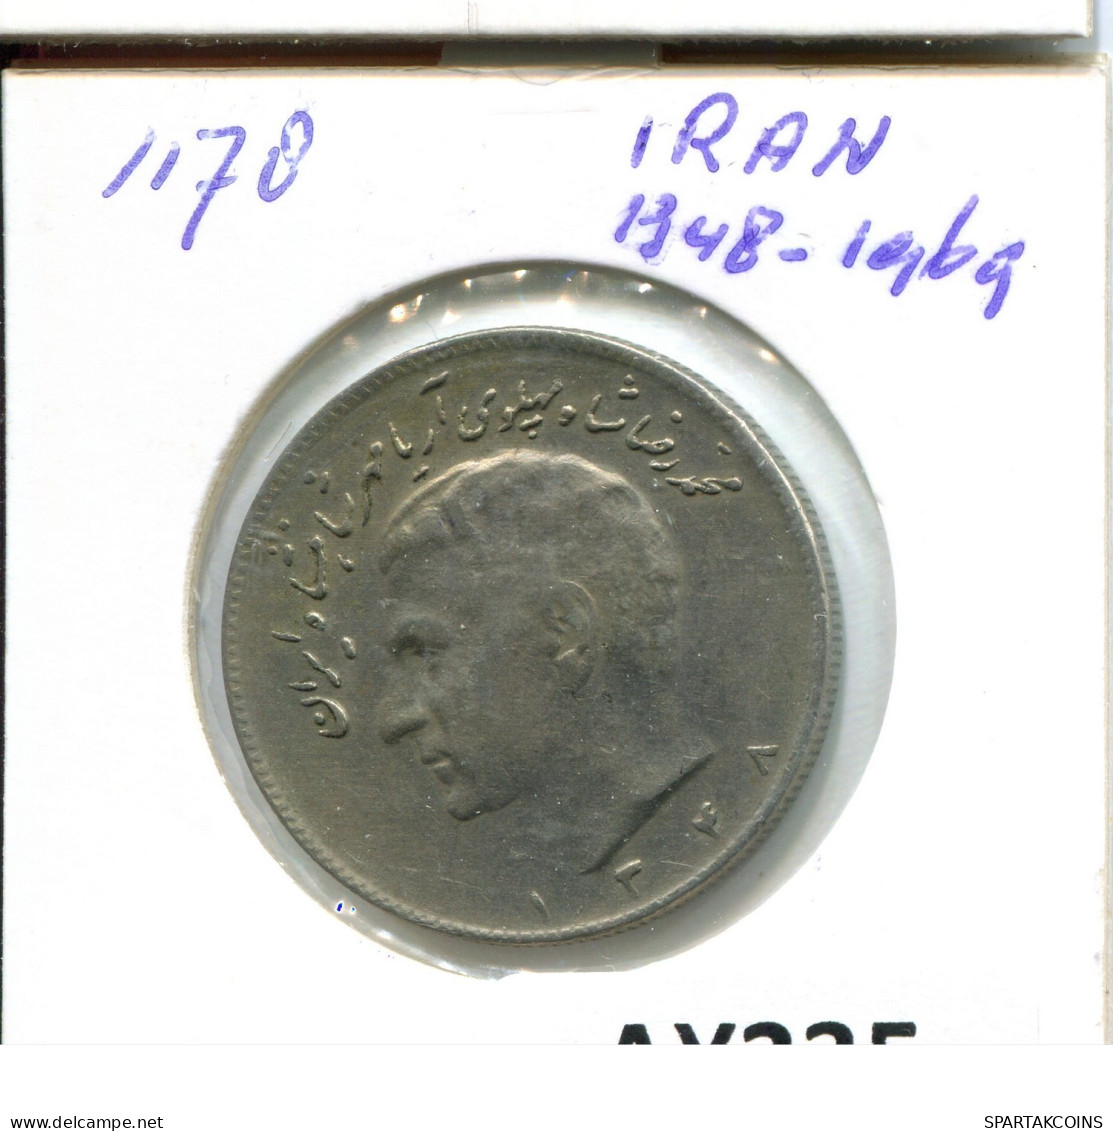 IRAN 10 RIALS 1969 / 1348 ISLAMIC COIN #AY235.2.U.A - Iran